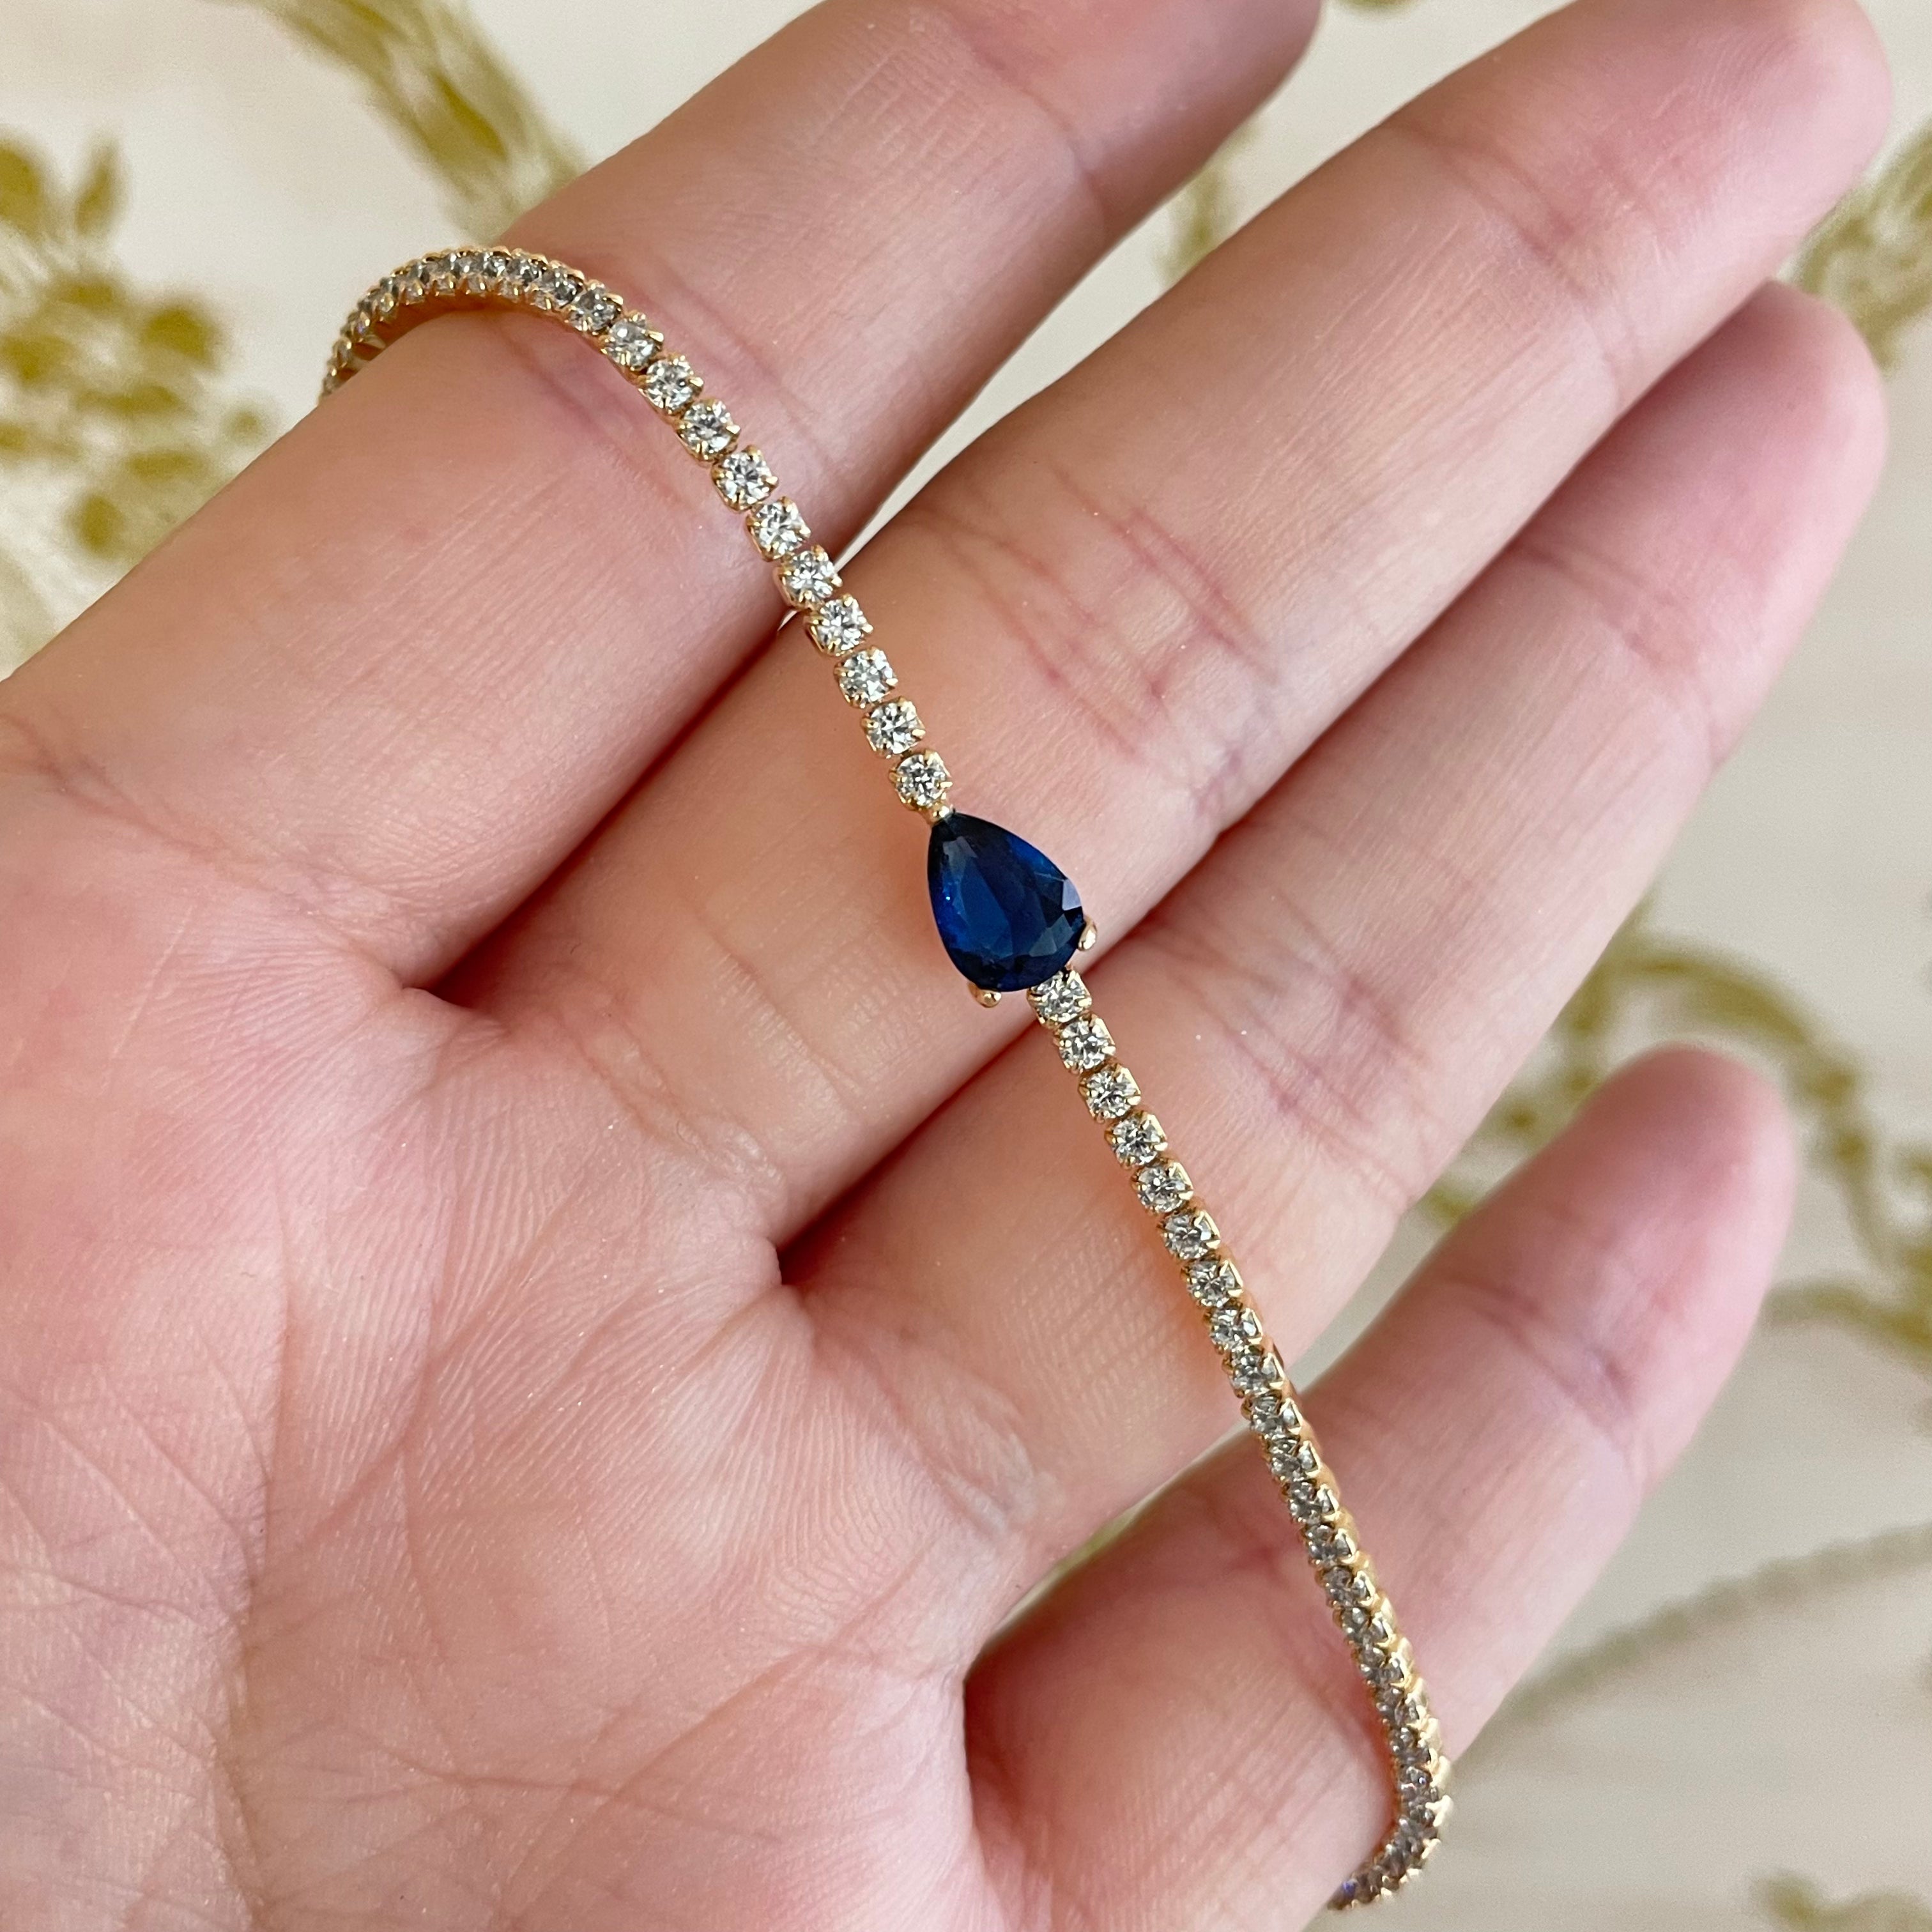 Teardrop royal blue C.Z bracelet